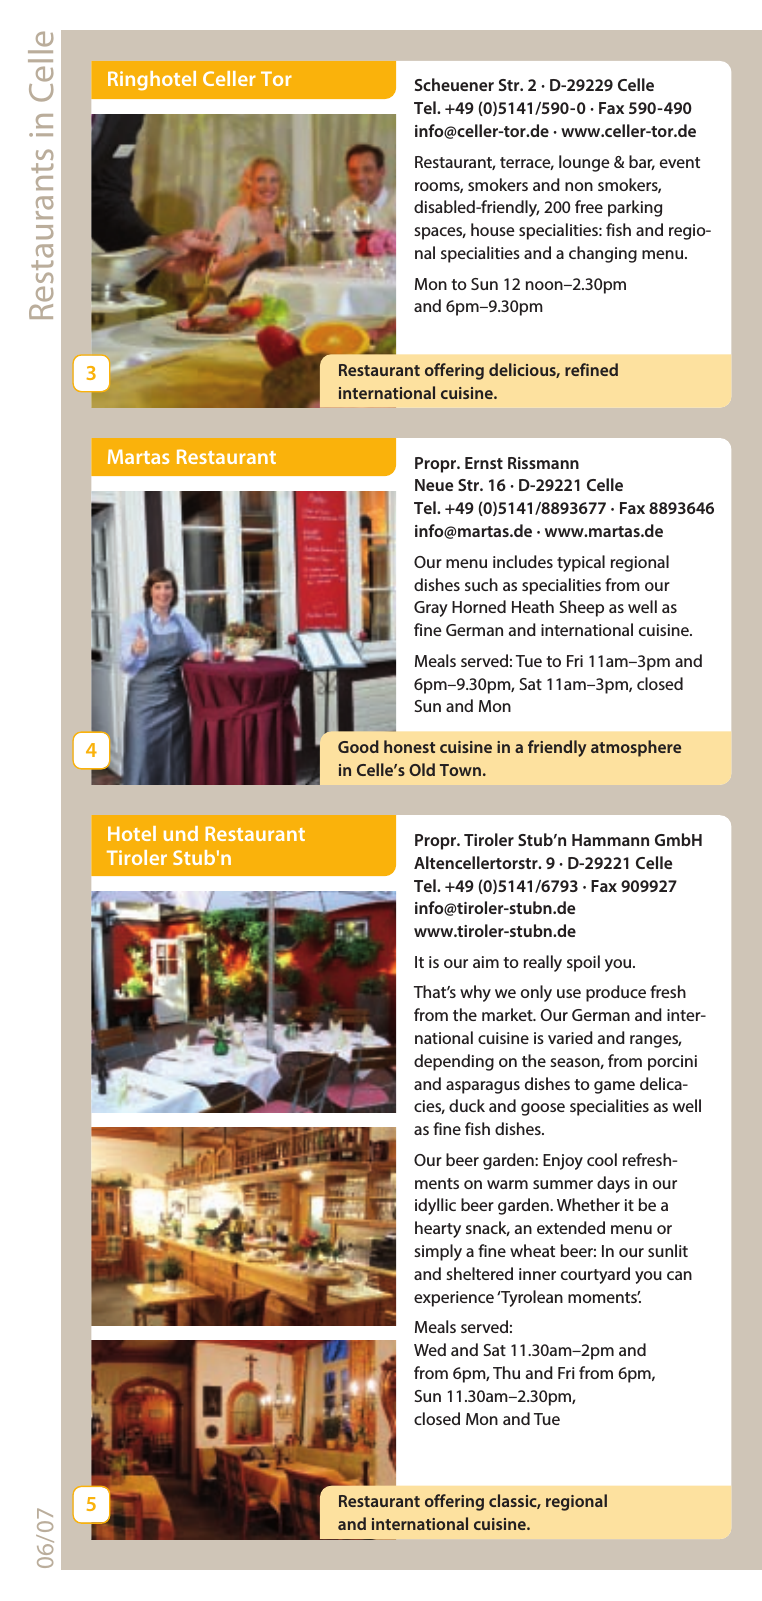 Vorschau Wining & Dining 2014 Seite 6